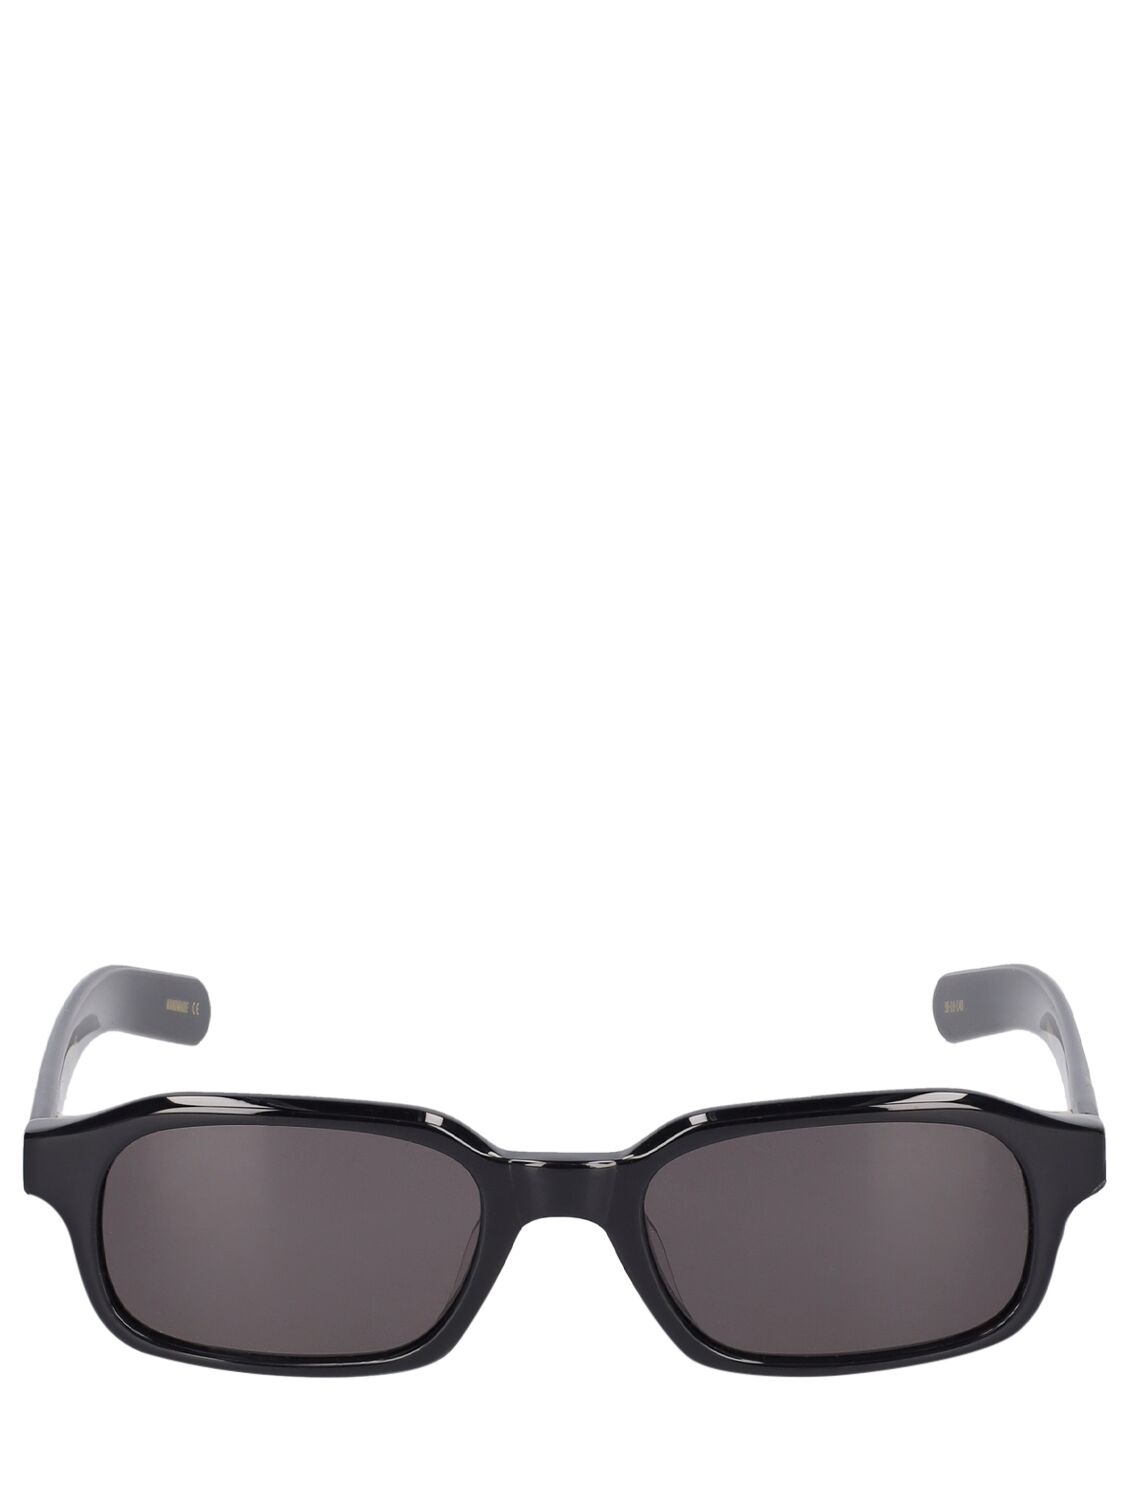 Flatlist Eyewear Hanky Sunglasses In Black